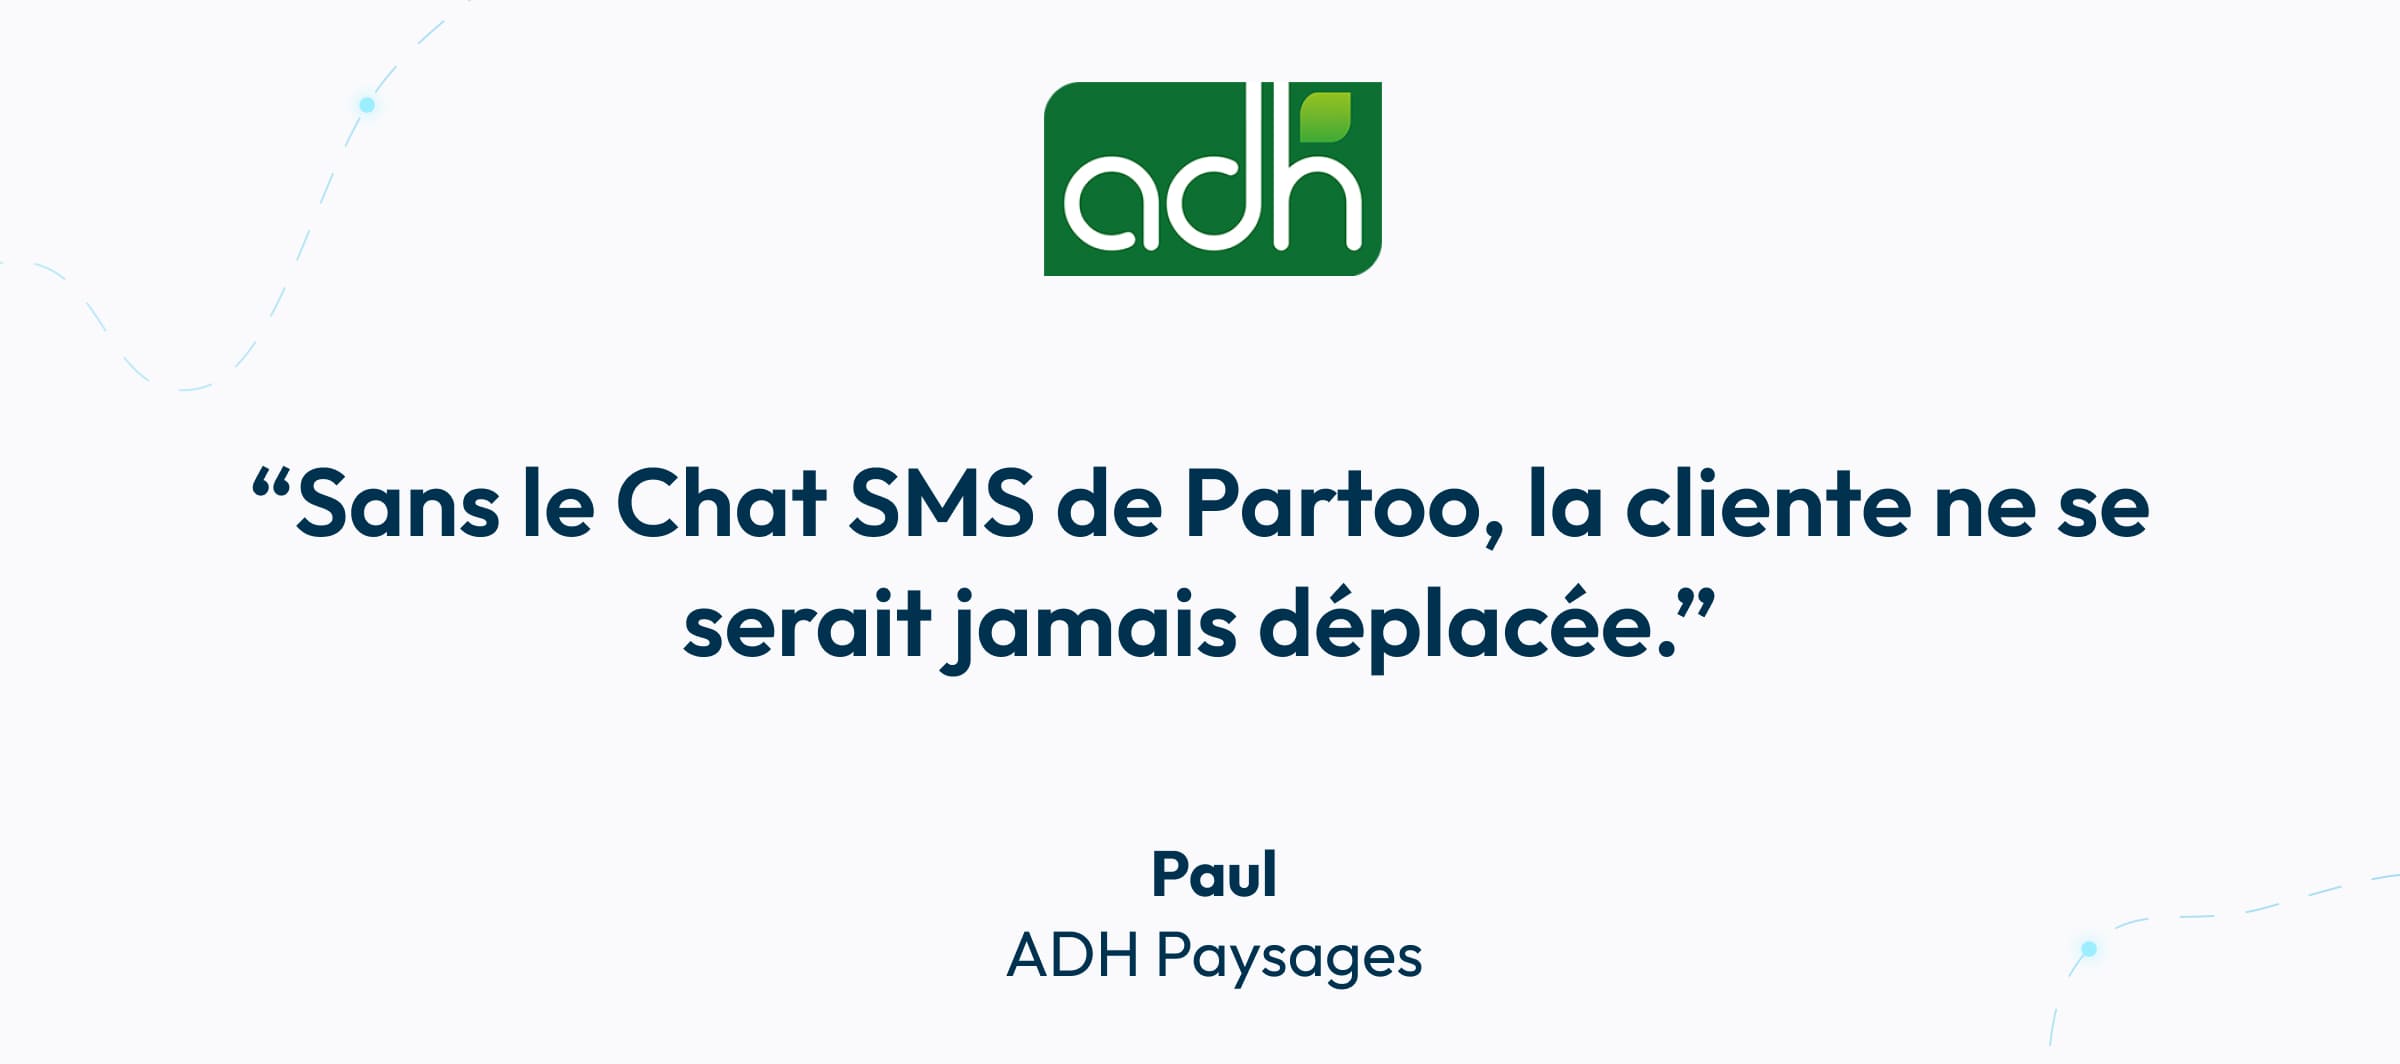 Paul parle du Chat SMS Partoo